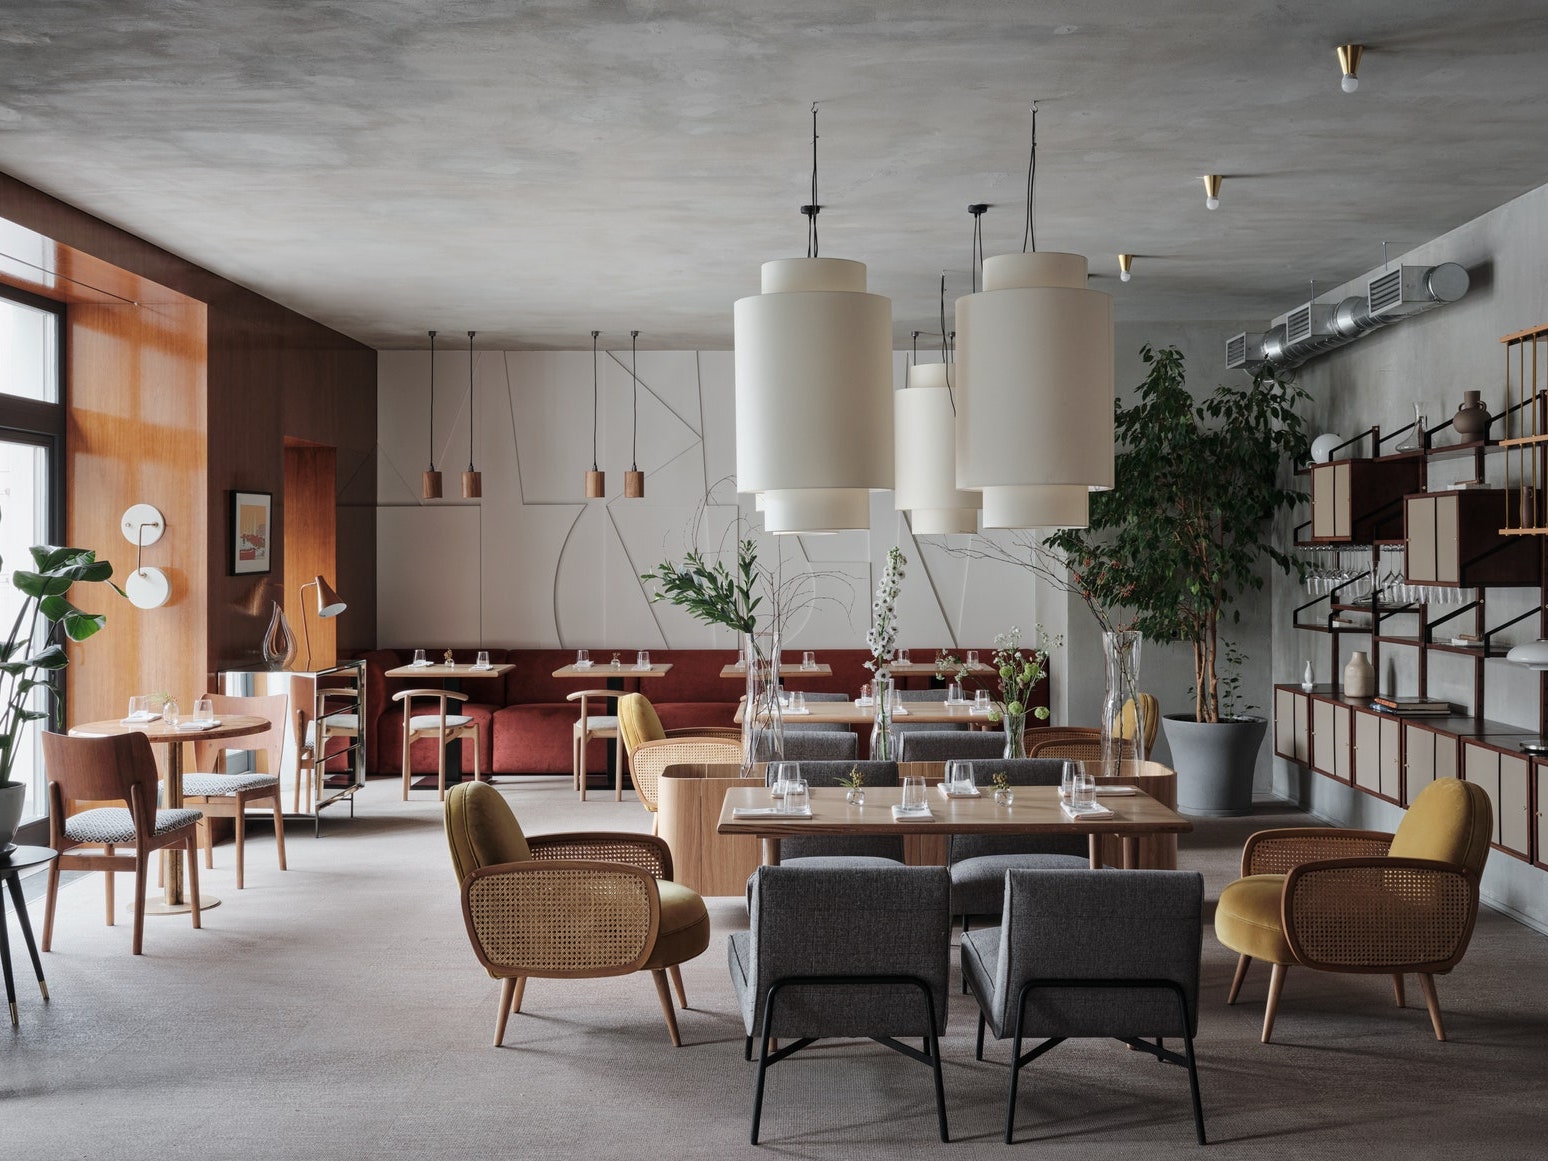 Полный гид AD по ресторанам Санкт-Петербурга 2021: 19 заведений с красивым интерьером и классной кухней